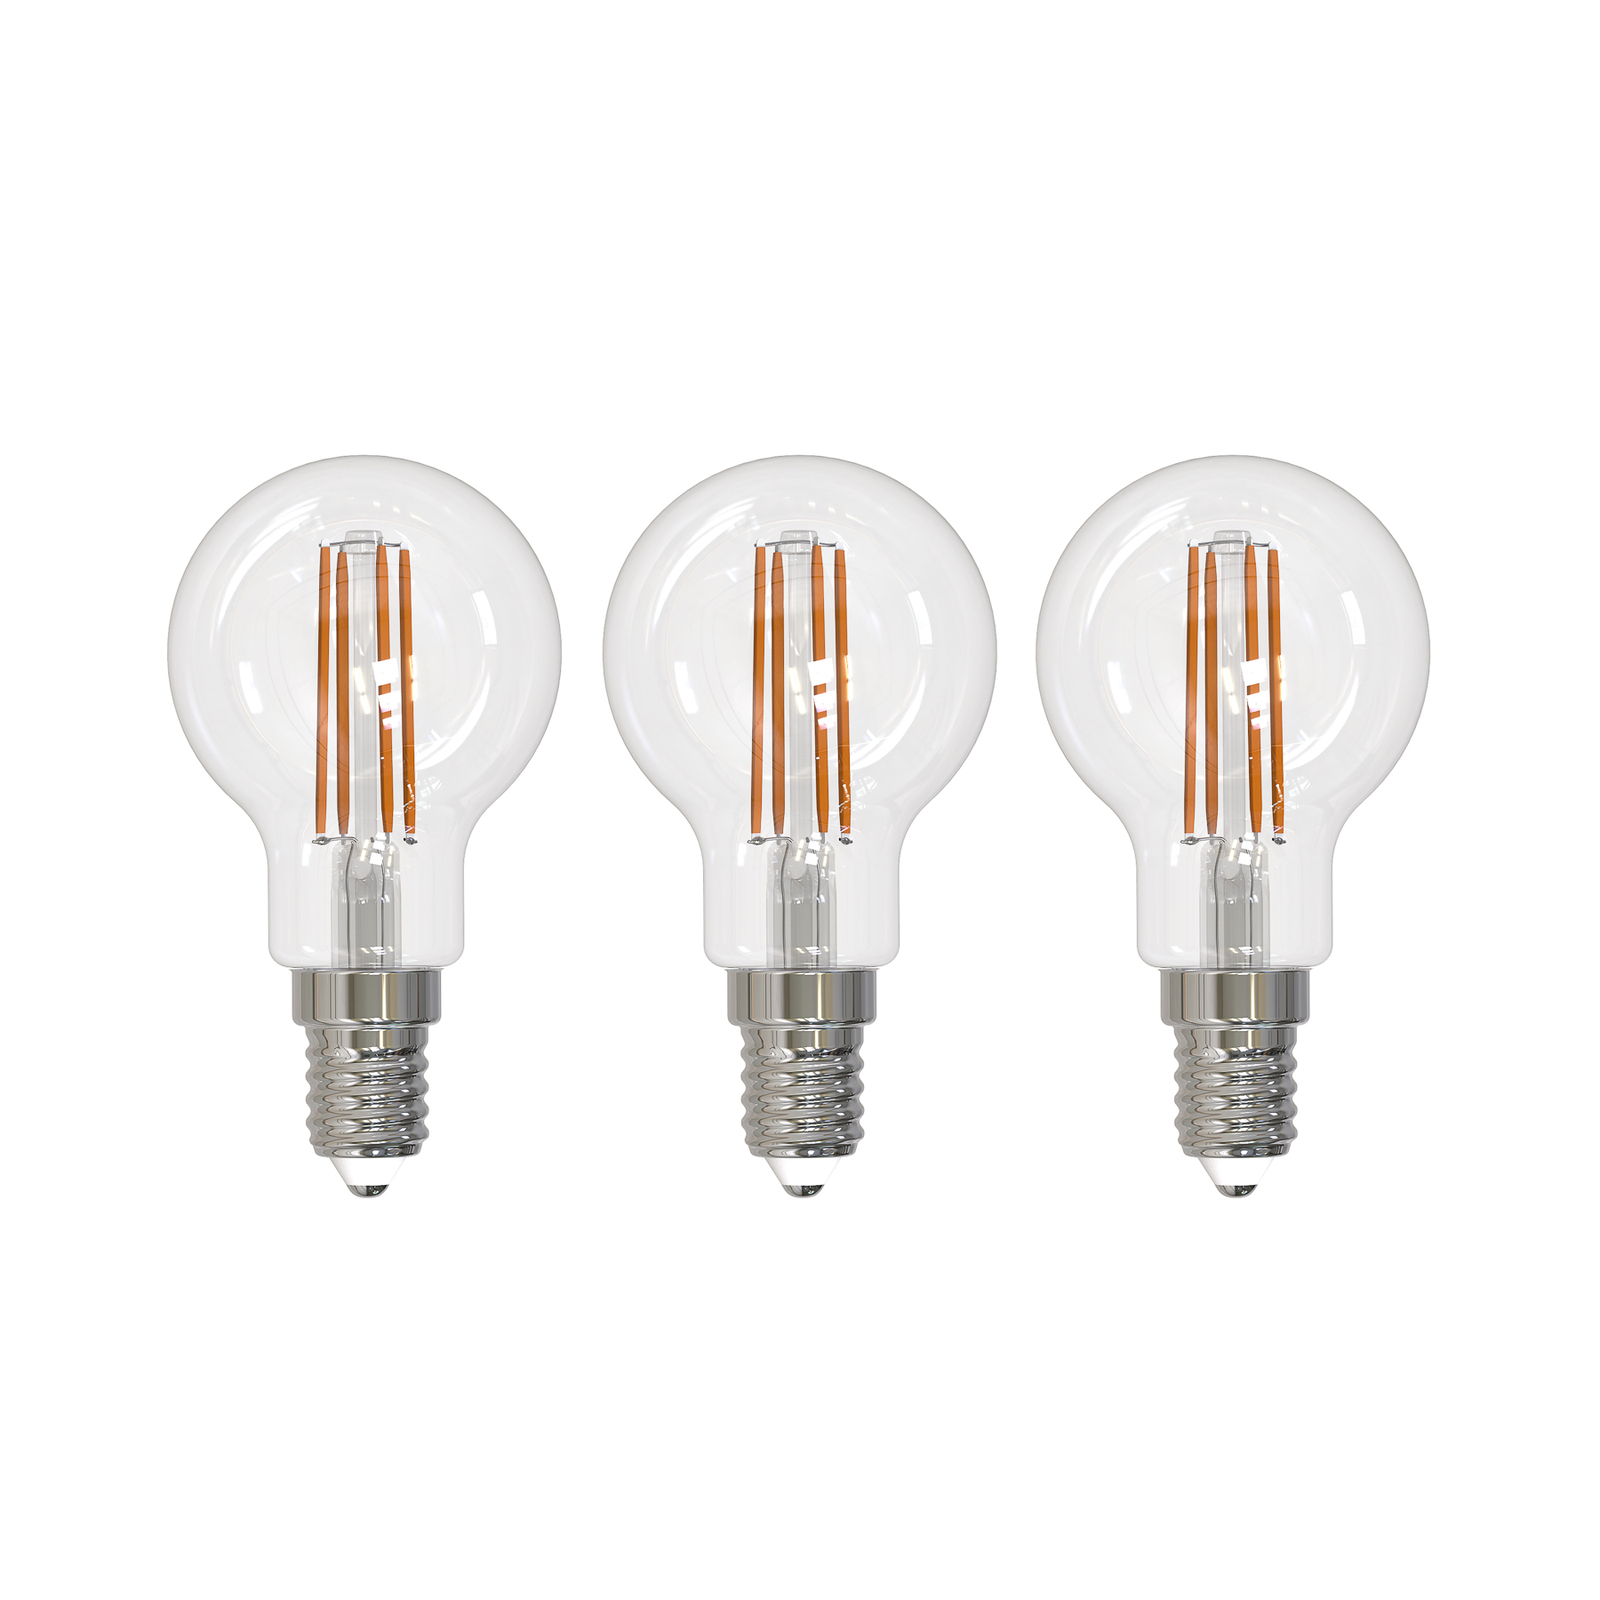 Arcchio lâmpada LED de incandescência E14 G45, conjunto de 3, 2700 K